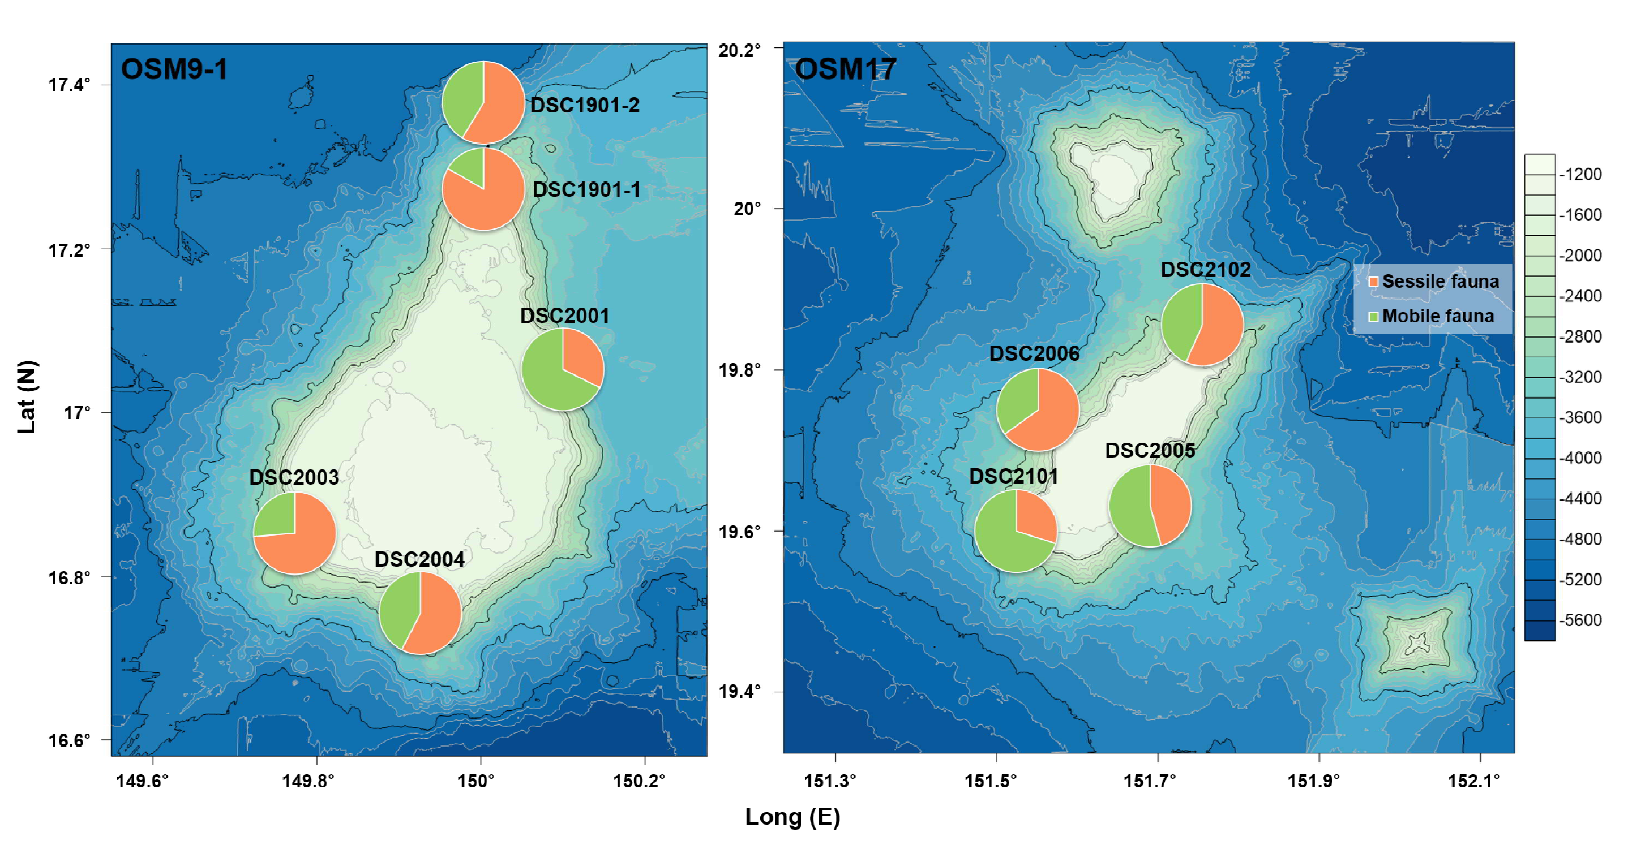 해저산 OSM9-1과 OSM17에서 출현한 고착성 및 유영성 동물군의 공간적 분포